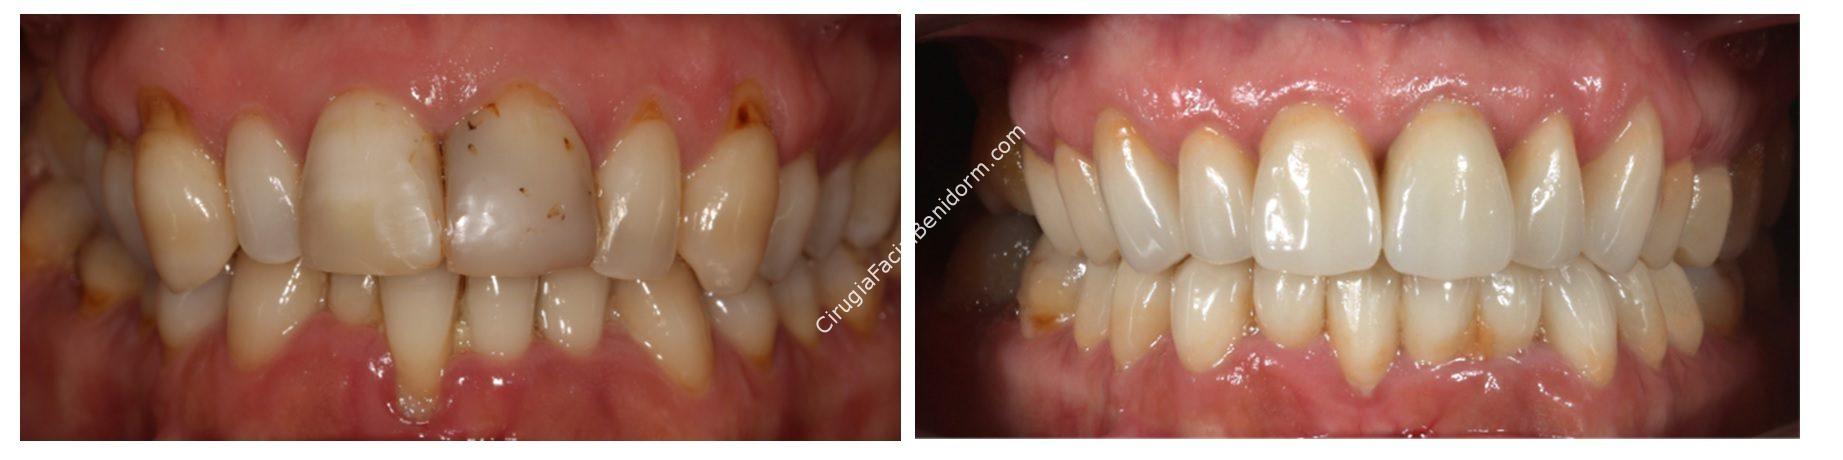 Estética Dental Paciente Tipo III